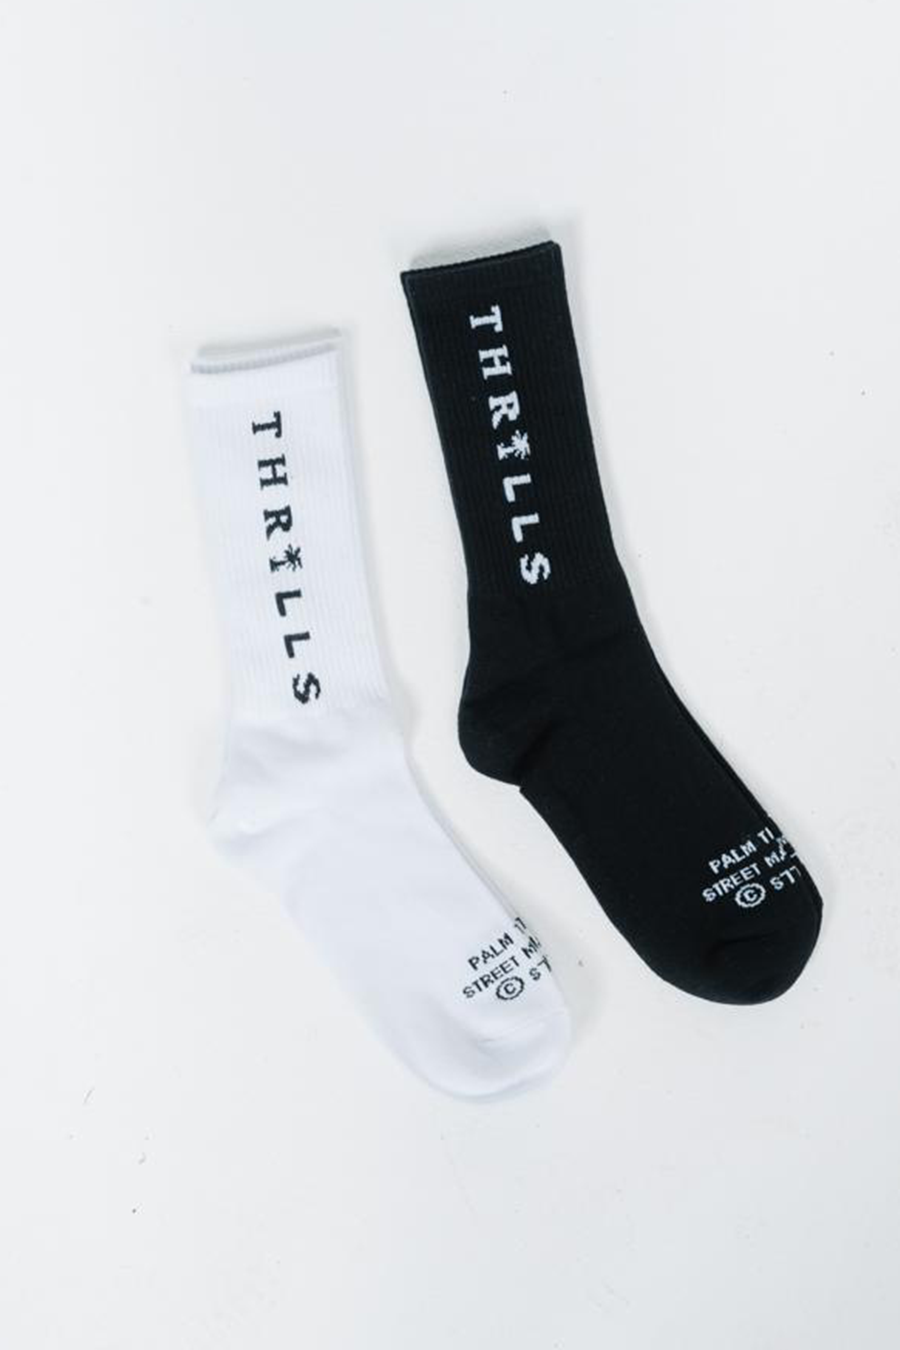 Palmed Thrills Socks 2 Pack| Black/White - Main Image Number 1 of 1